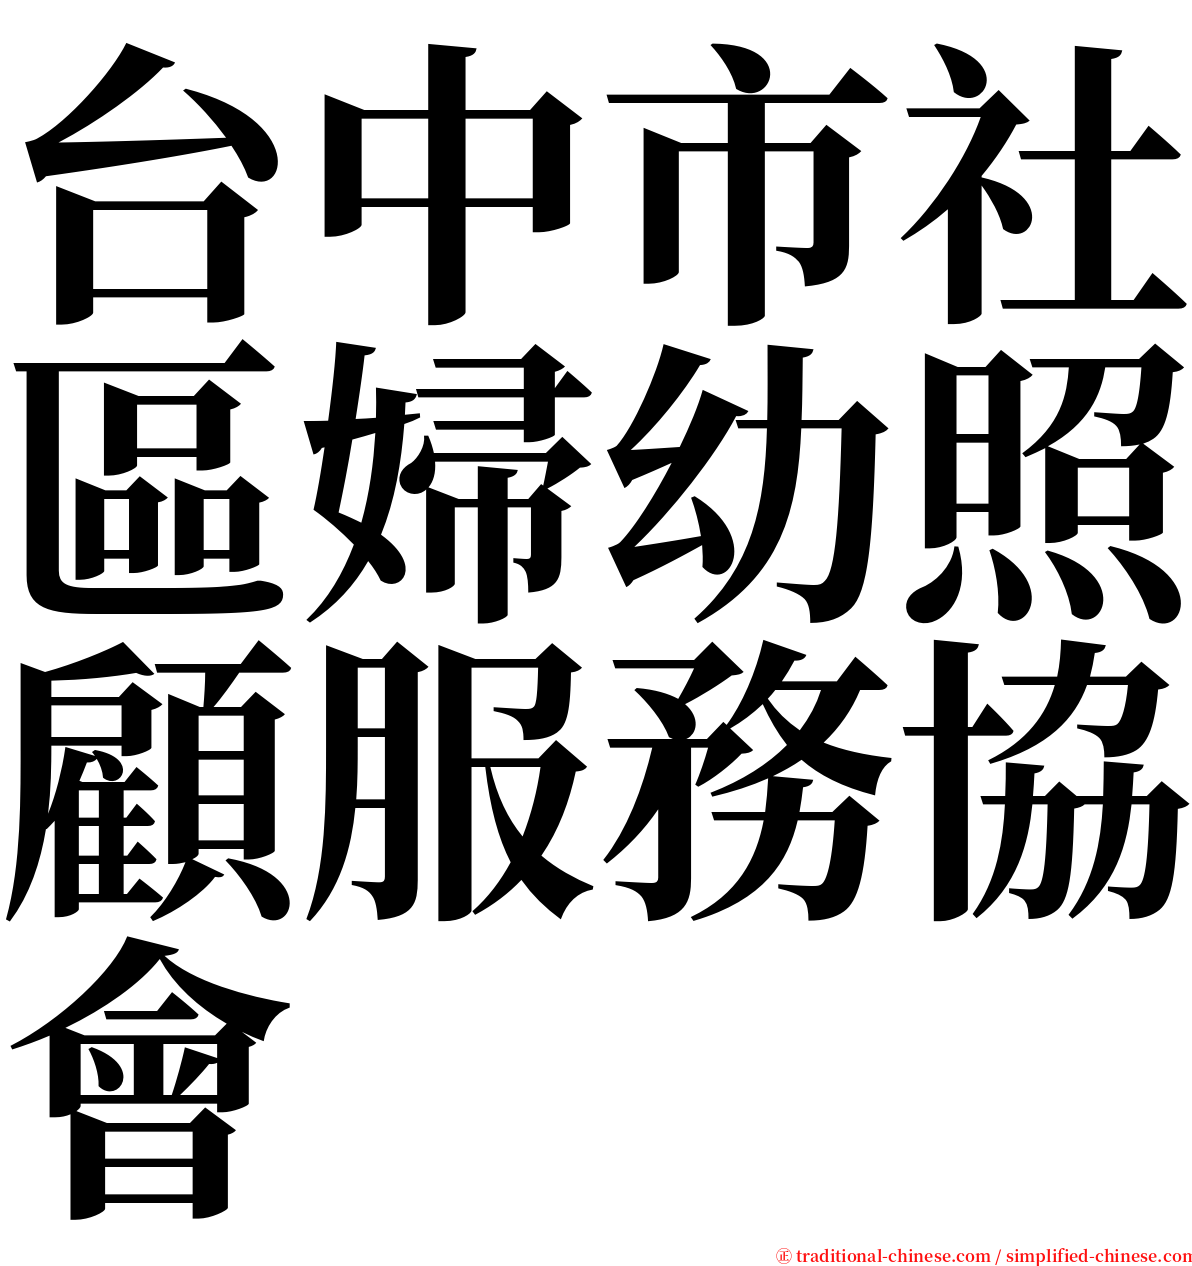 台中市社區婦幼照顧服務協會 serif font